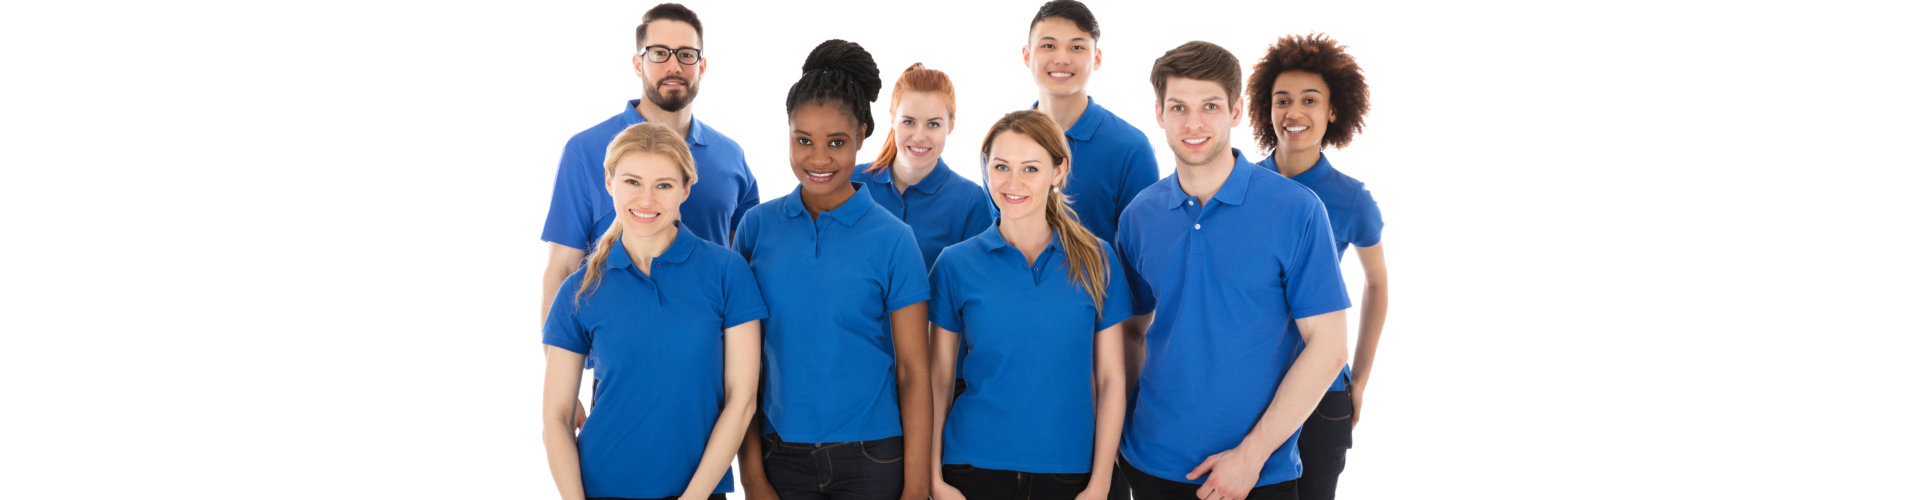 teens wearing blue shirt smiling